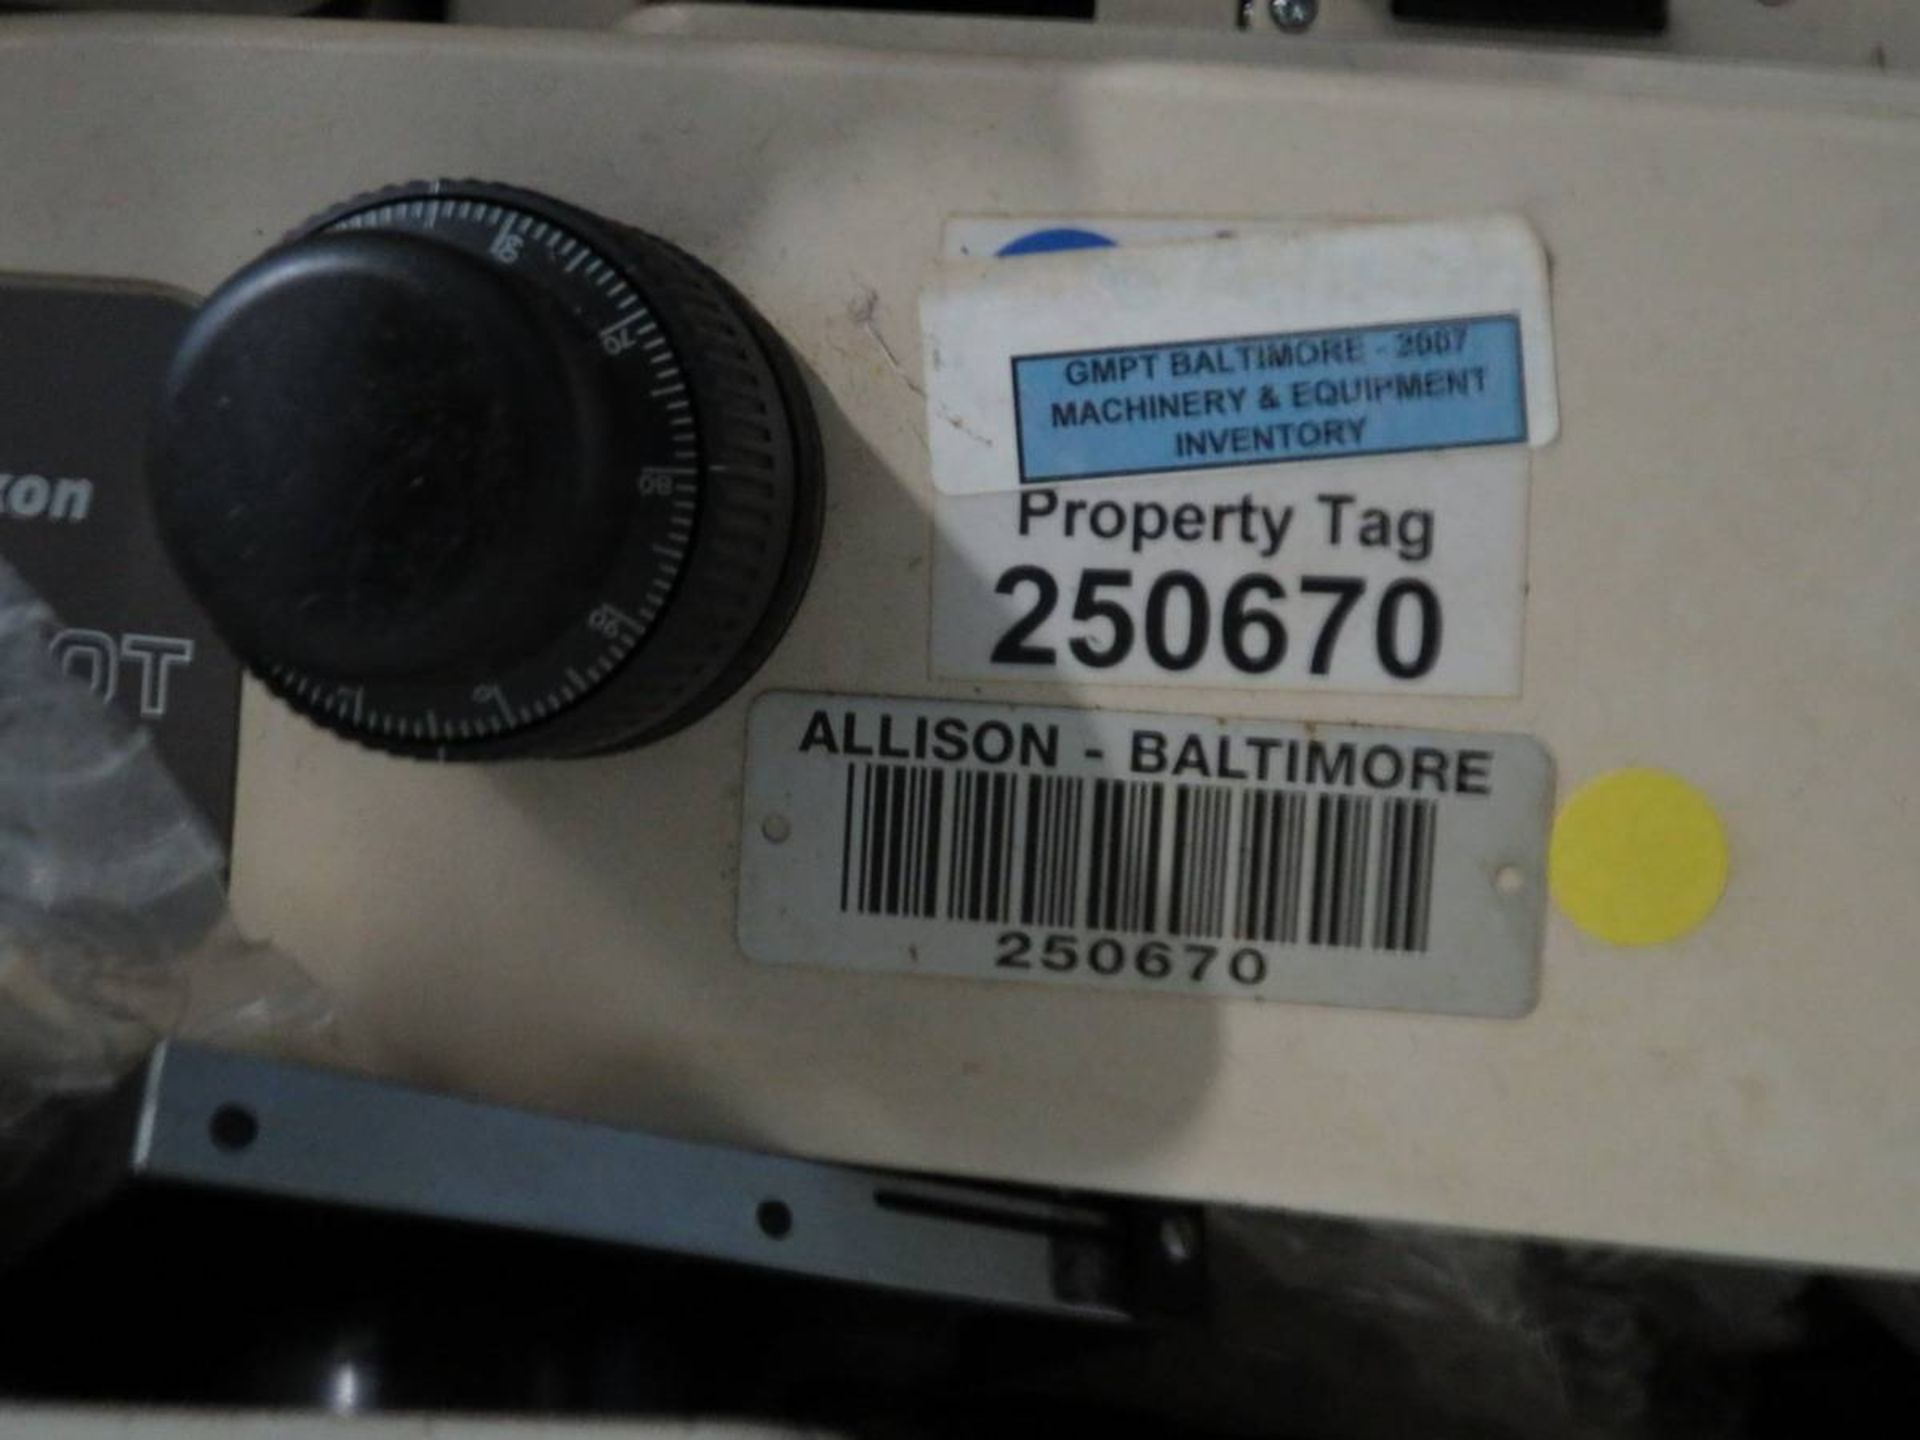 Nikon Epiphot 200 Inverted Microscope - Image 7 of 7